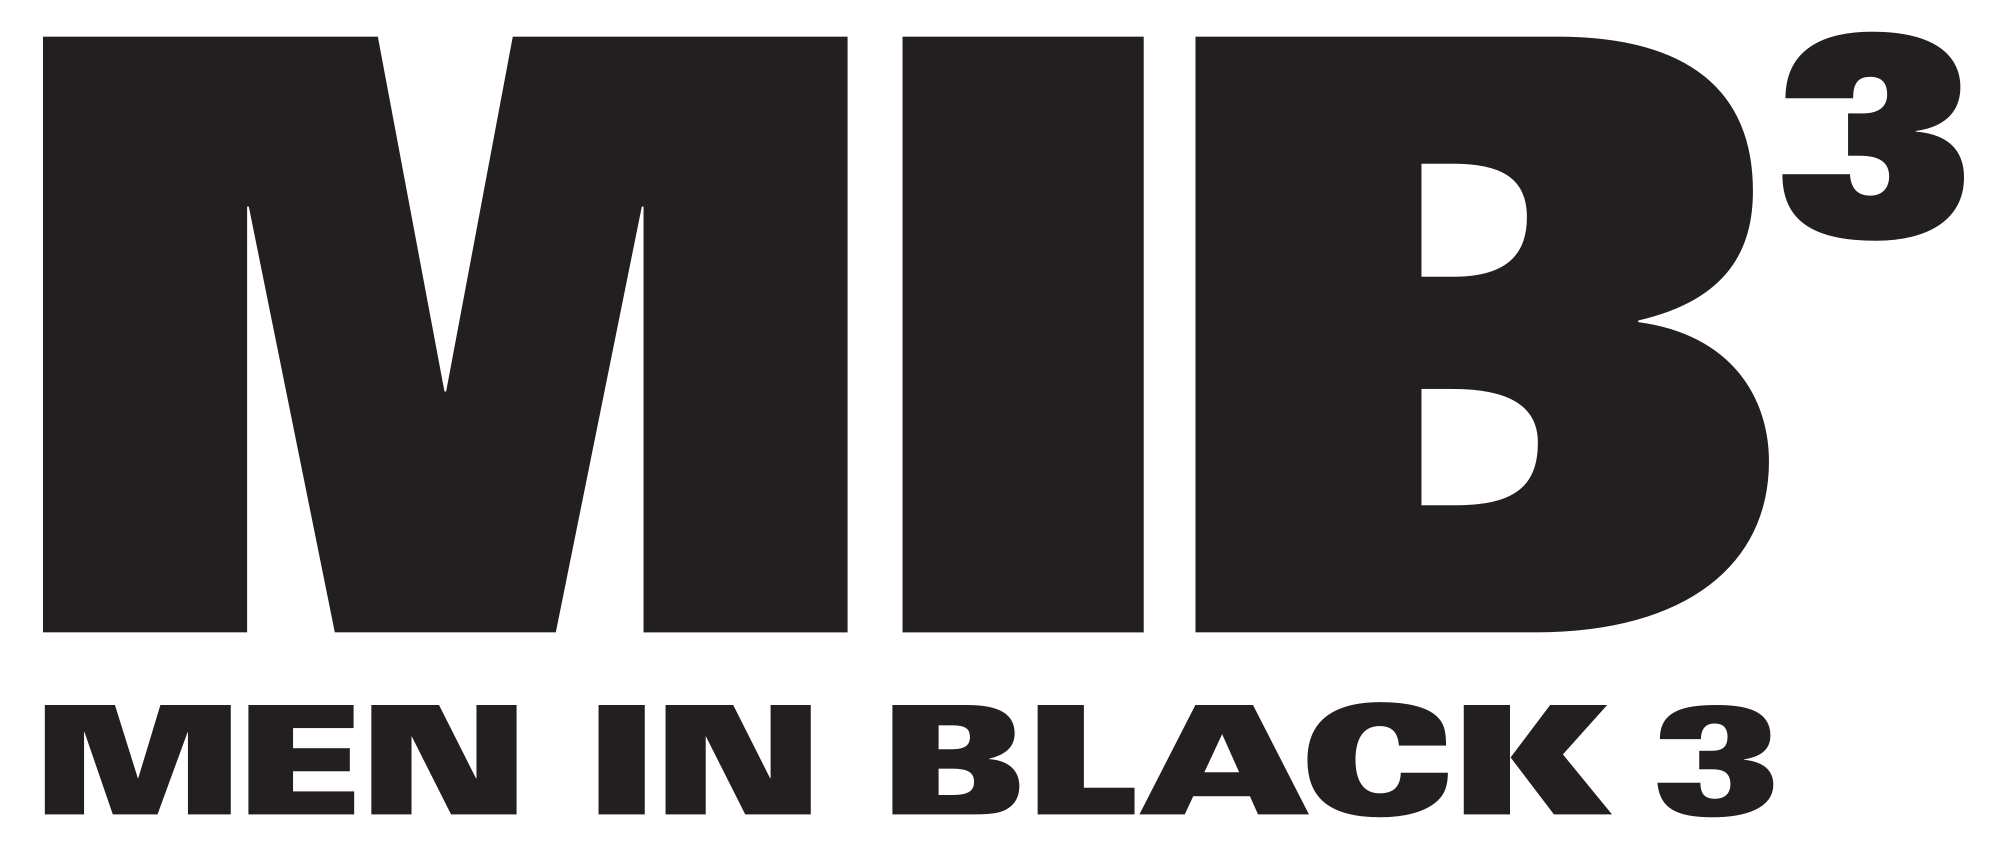 Men in Black Logo - File:Men in black 3.svg - Wikimedia Commons